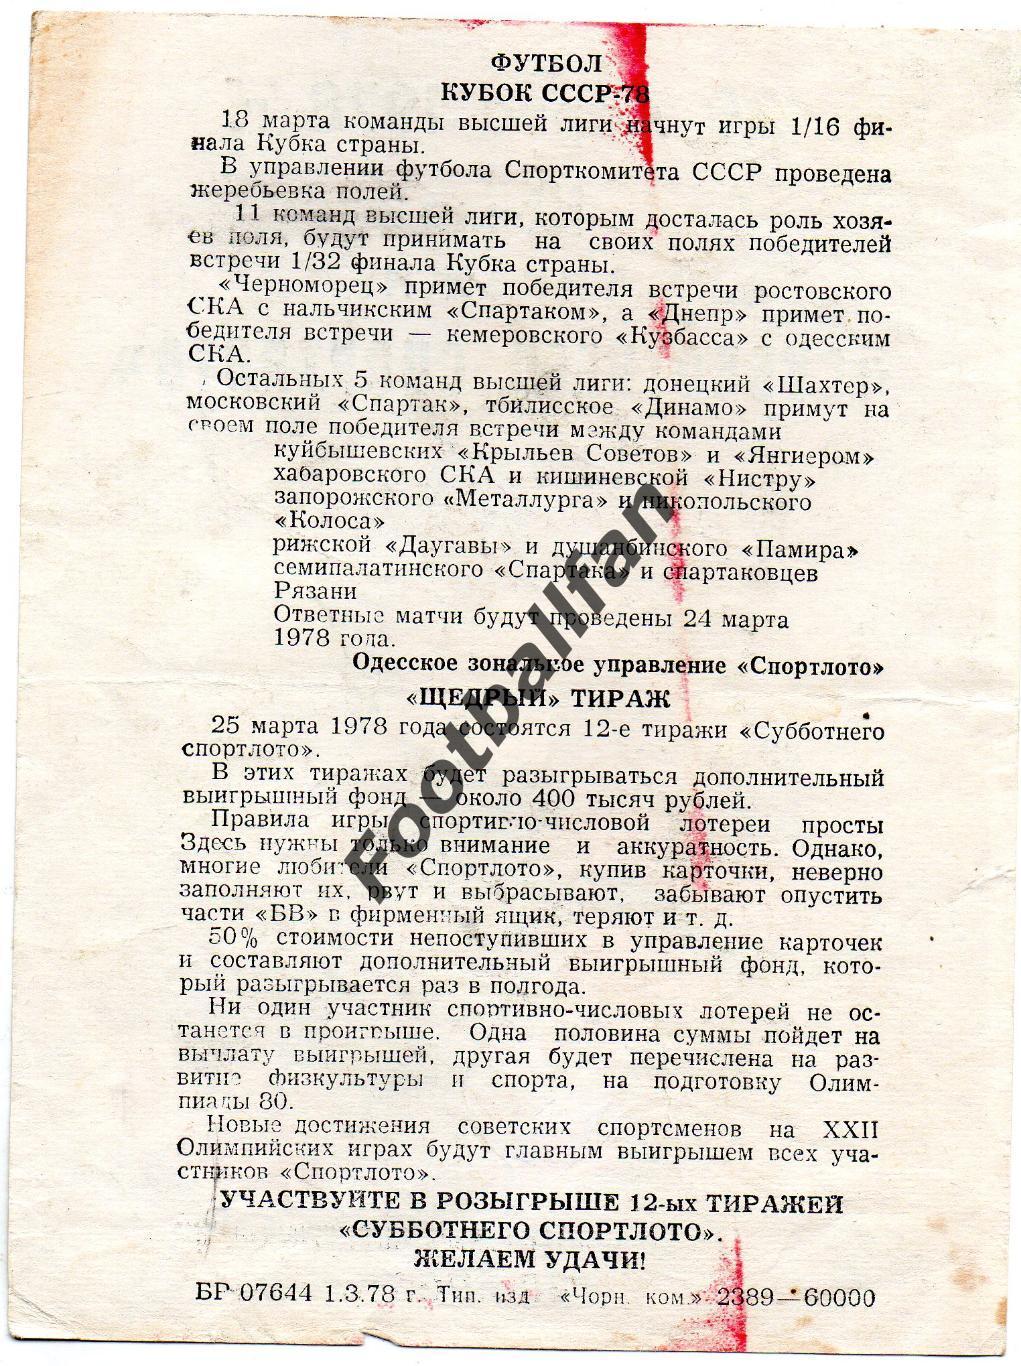 Субботнее спортлото . г.Одесса . 25 марта 1978 год 1